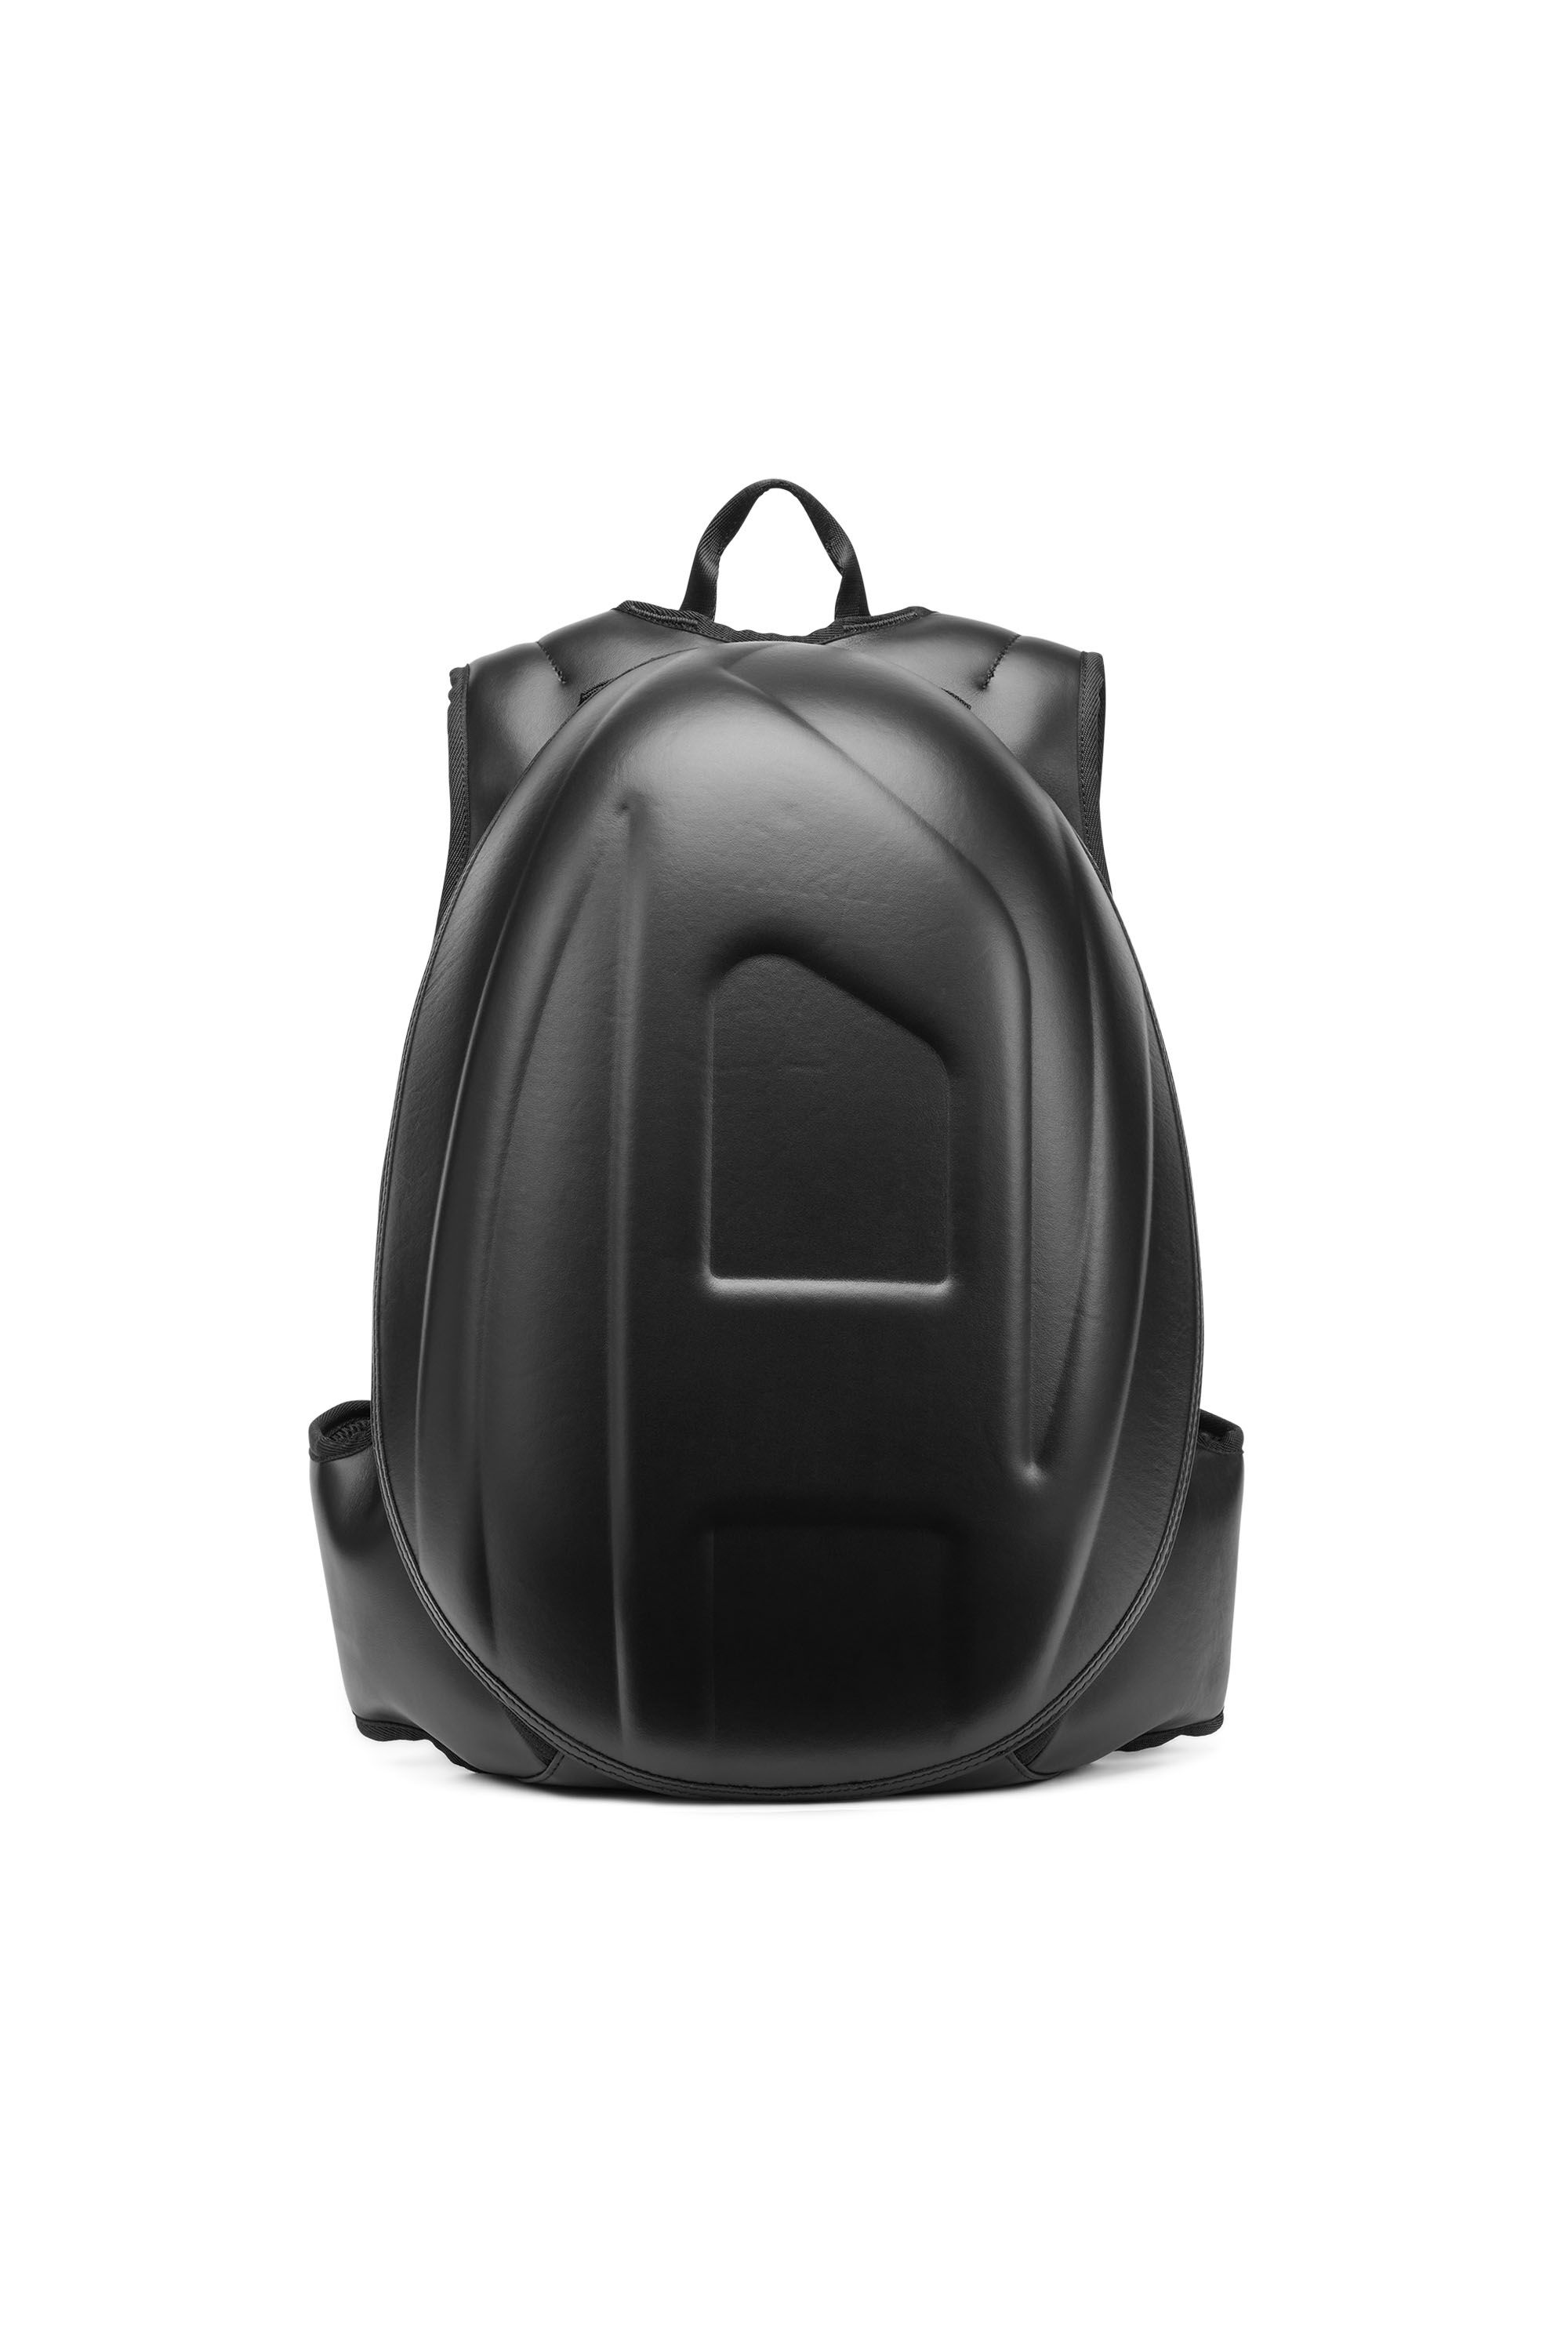 Diesel - 1DR-POD BACKPACK, Man 1DR-Pod Backpack - Hard shell leather backpack in Black - Image 1